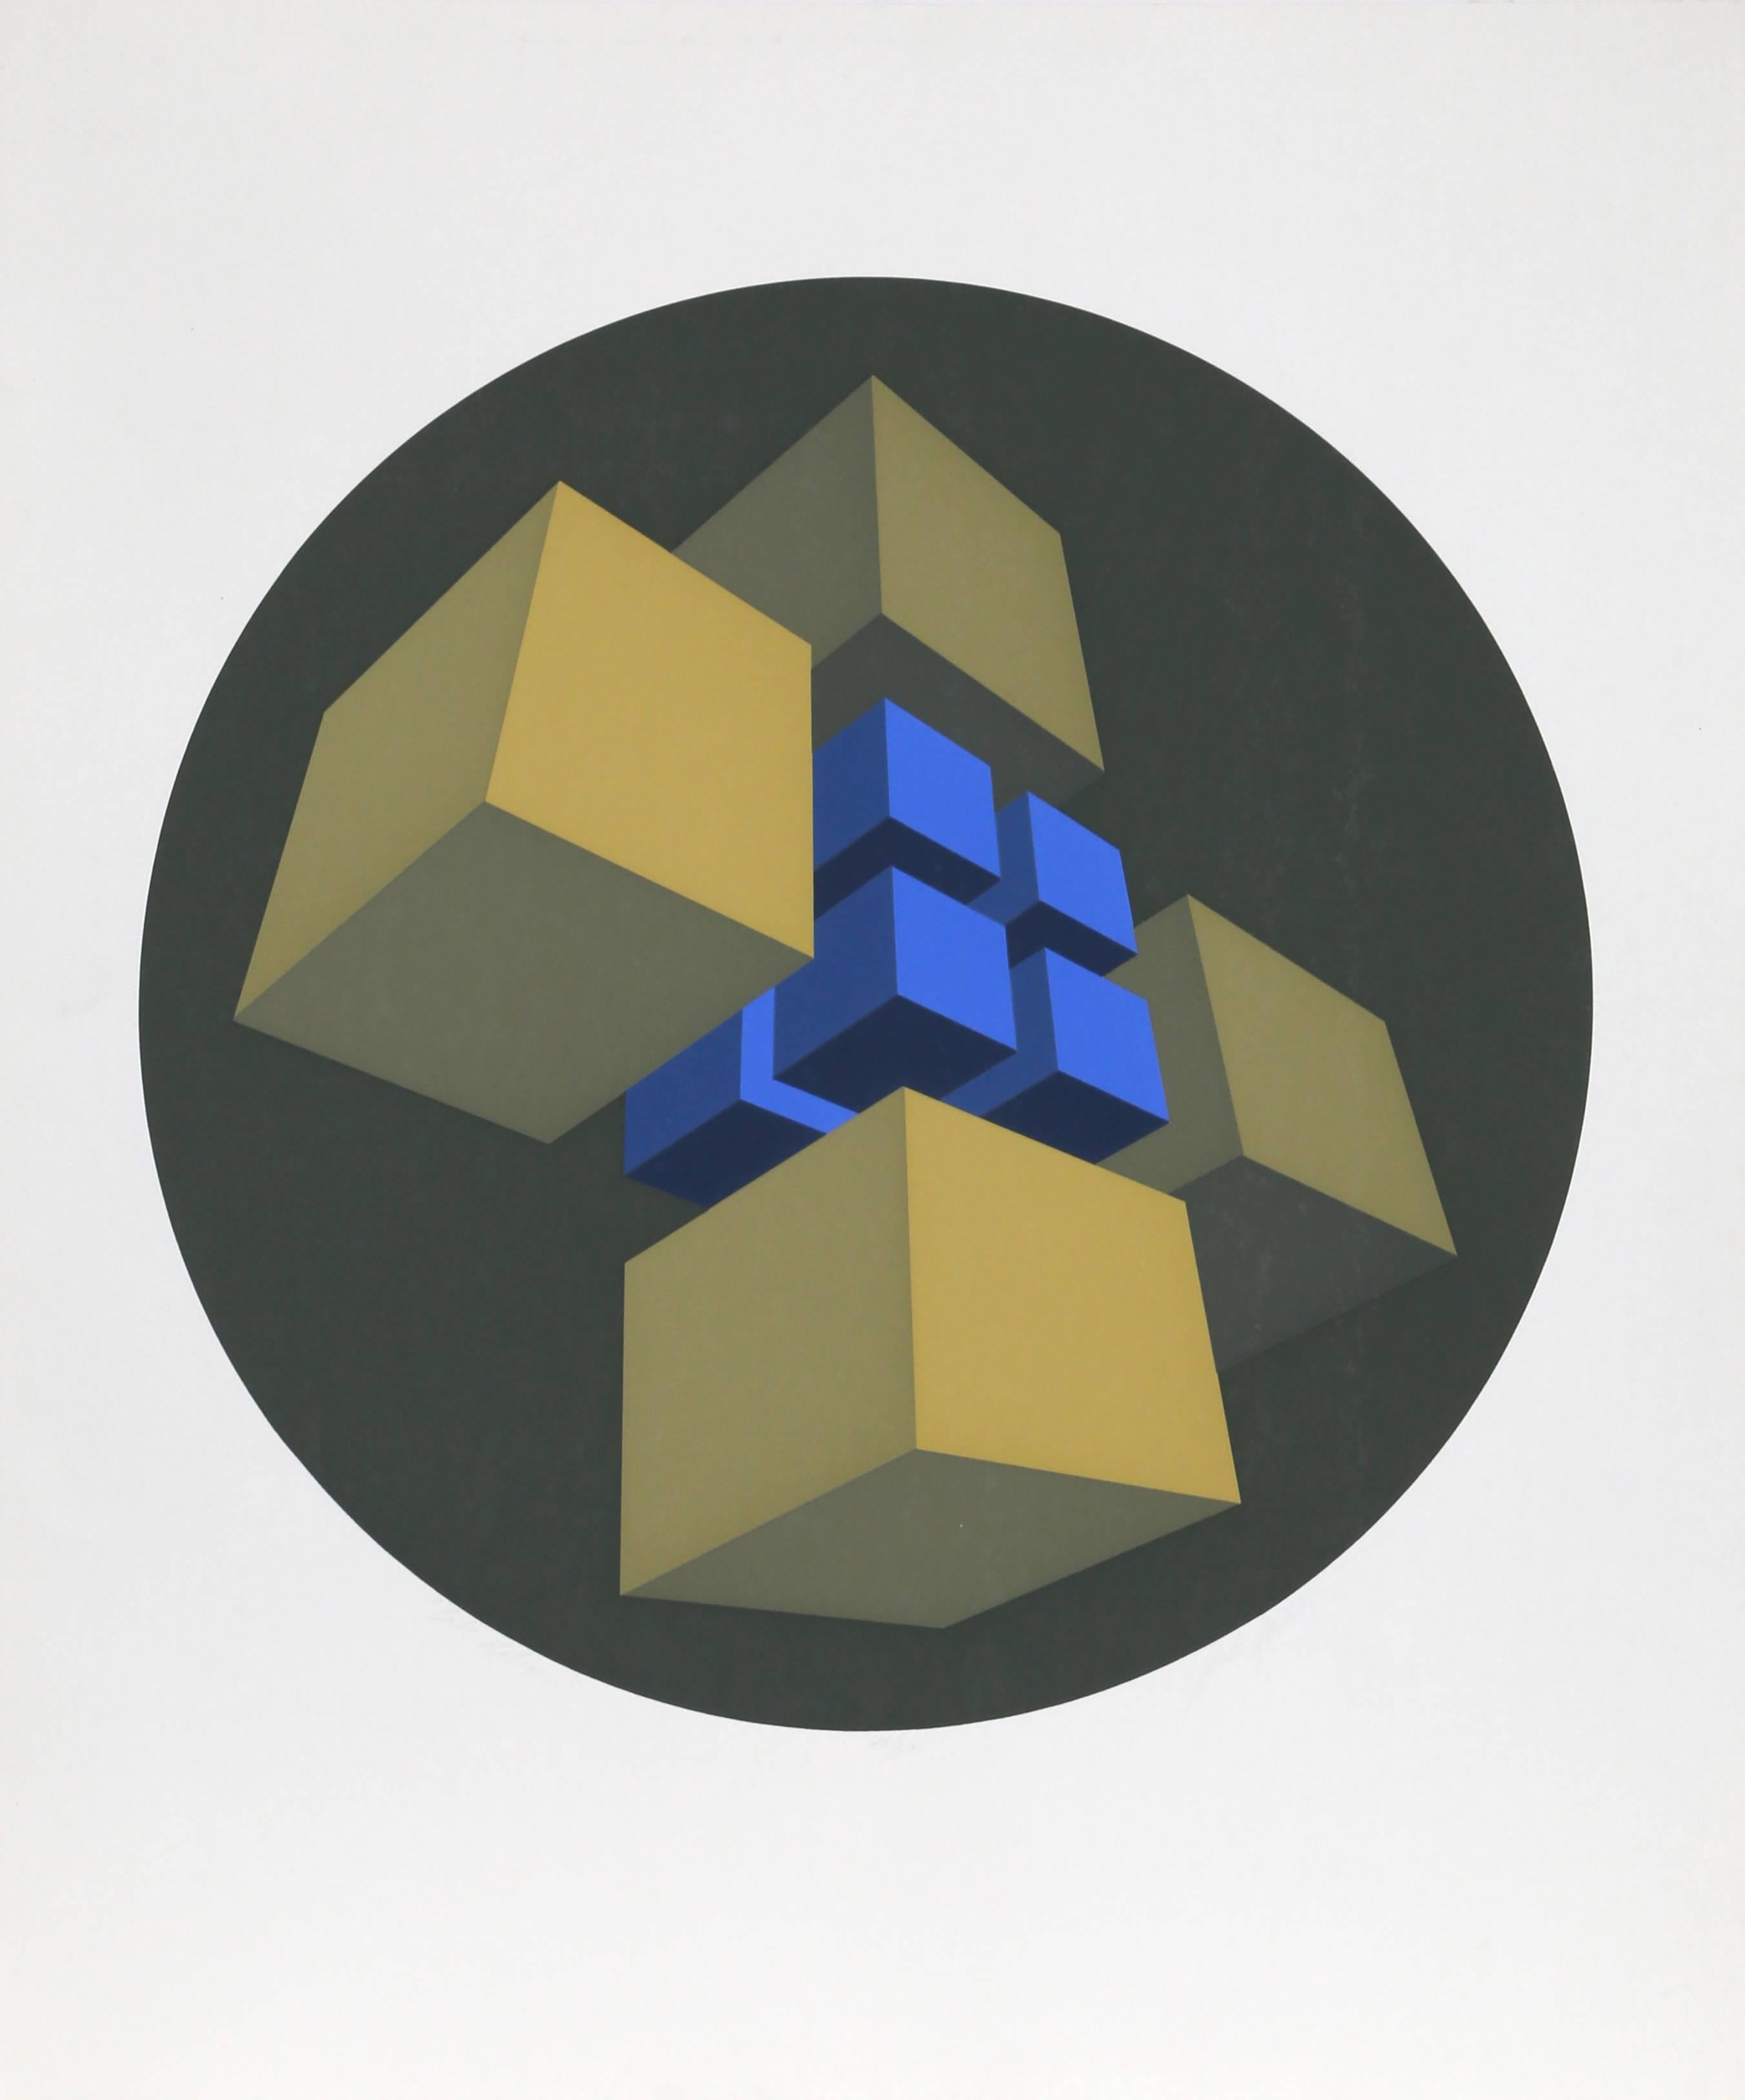 Würfelständer, geometrischer abstrakter Raumteiler mit Würfelmotiv von Marko Spalatin